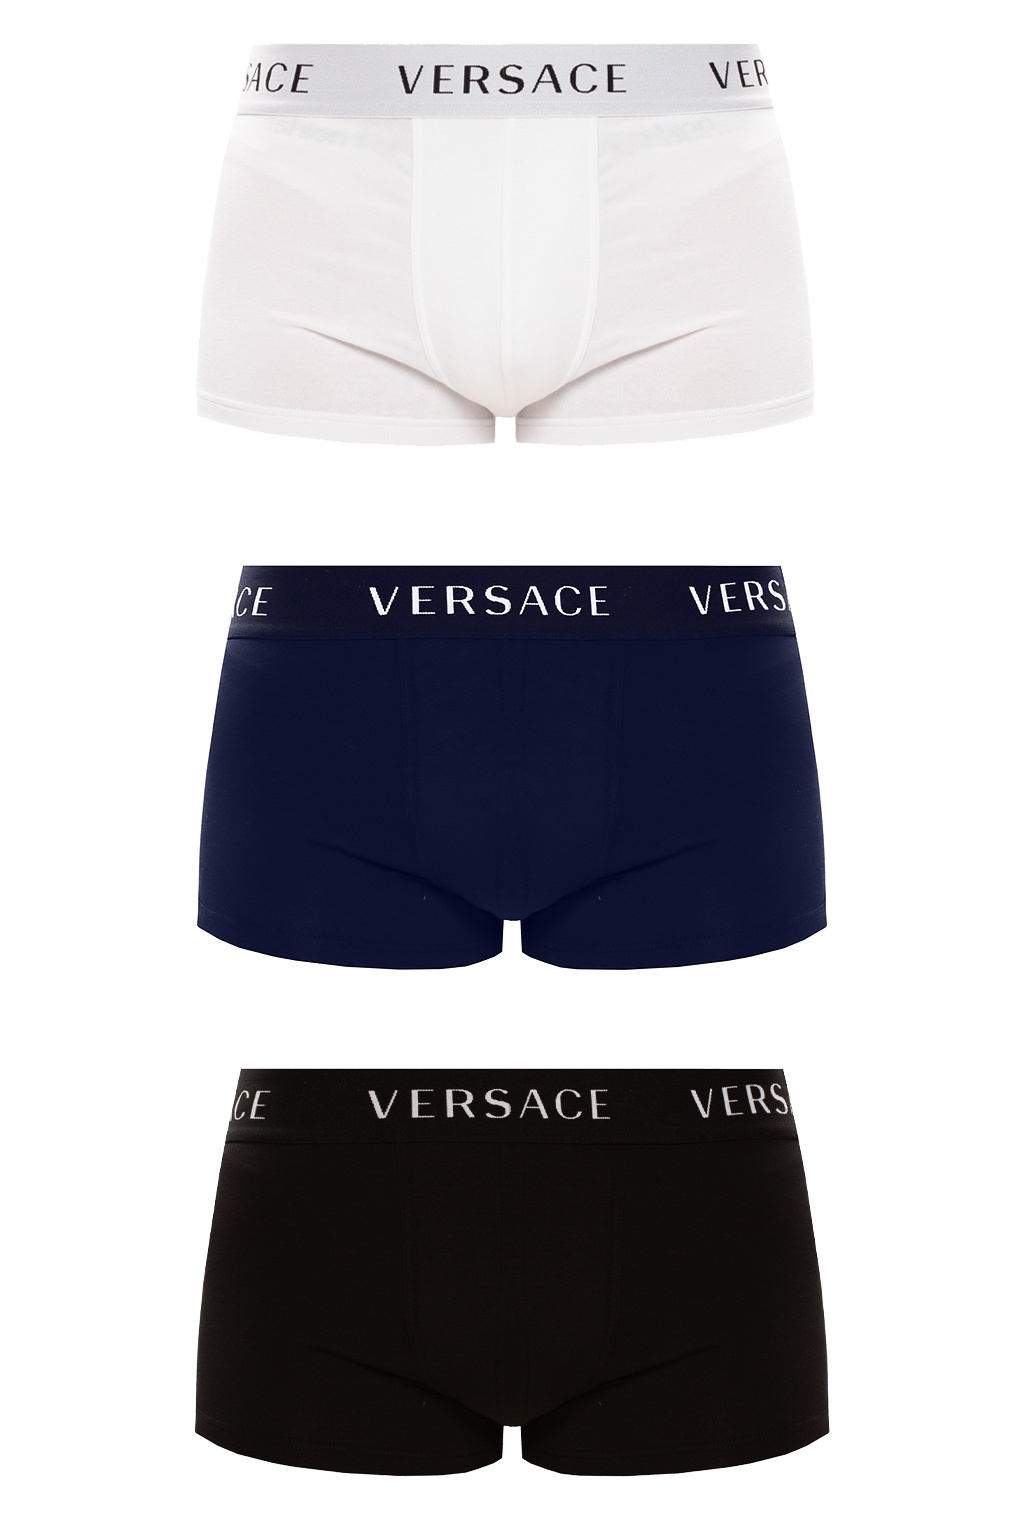 versace underwear australia